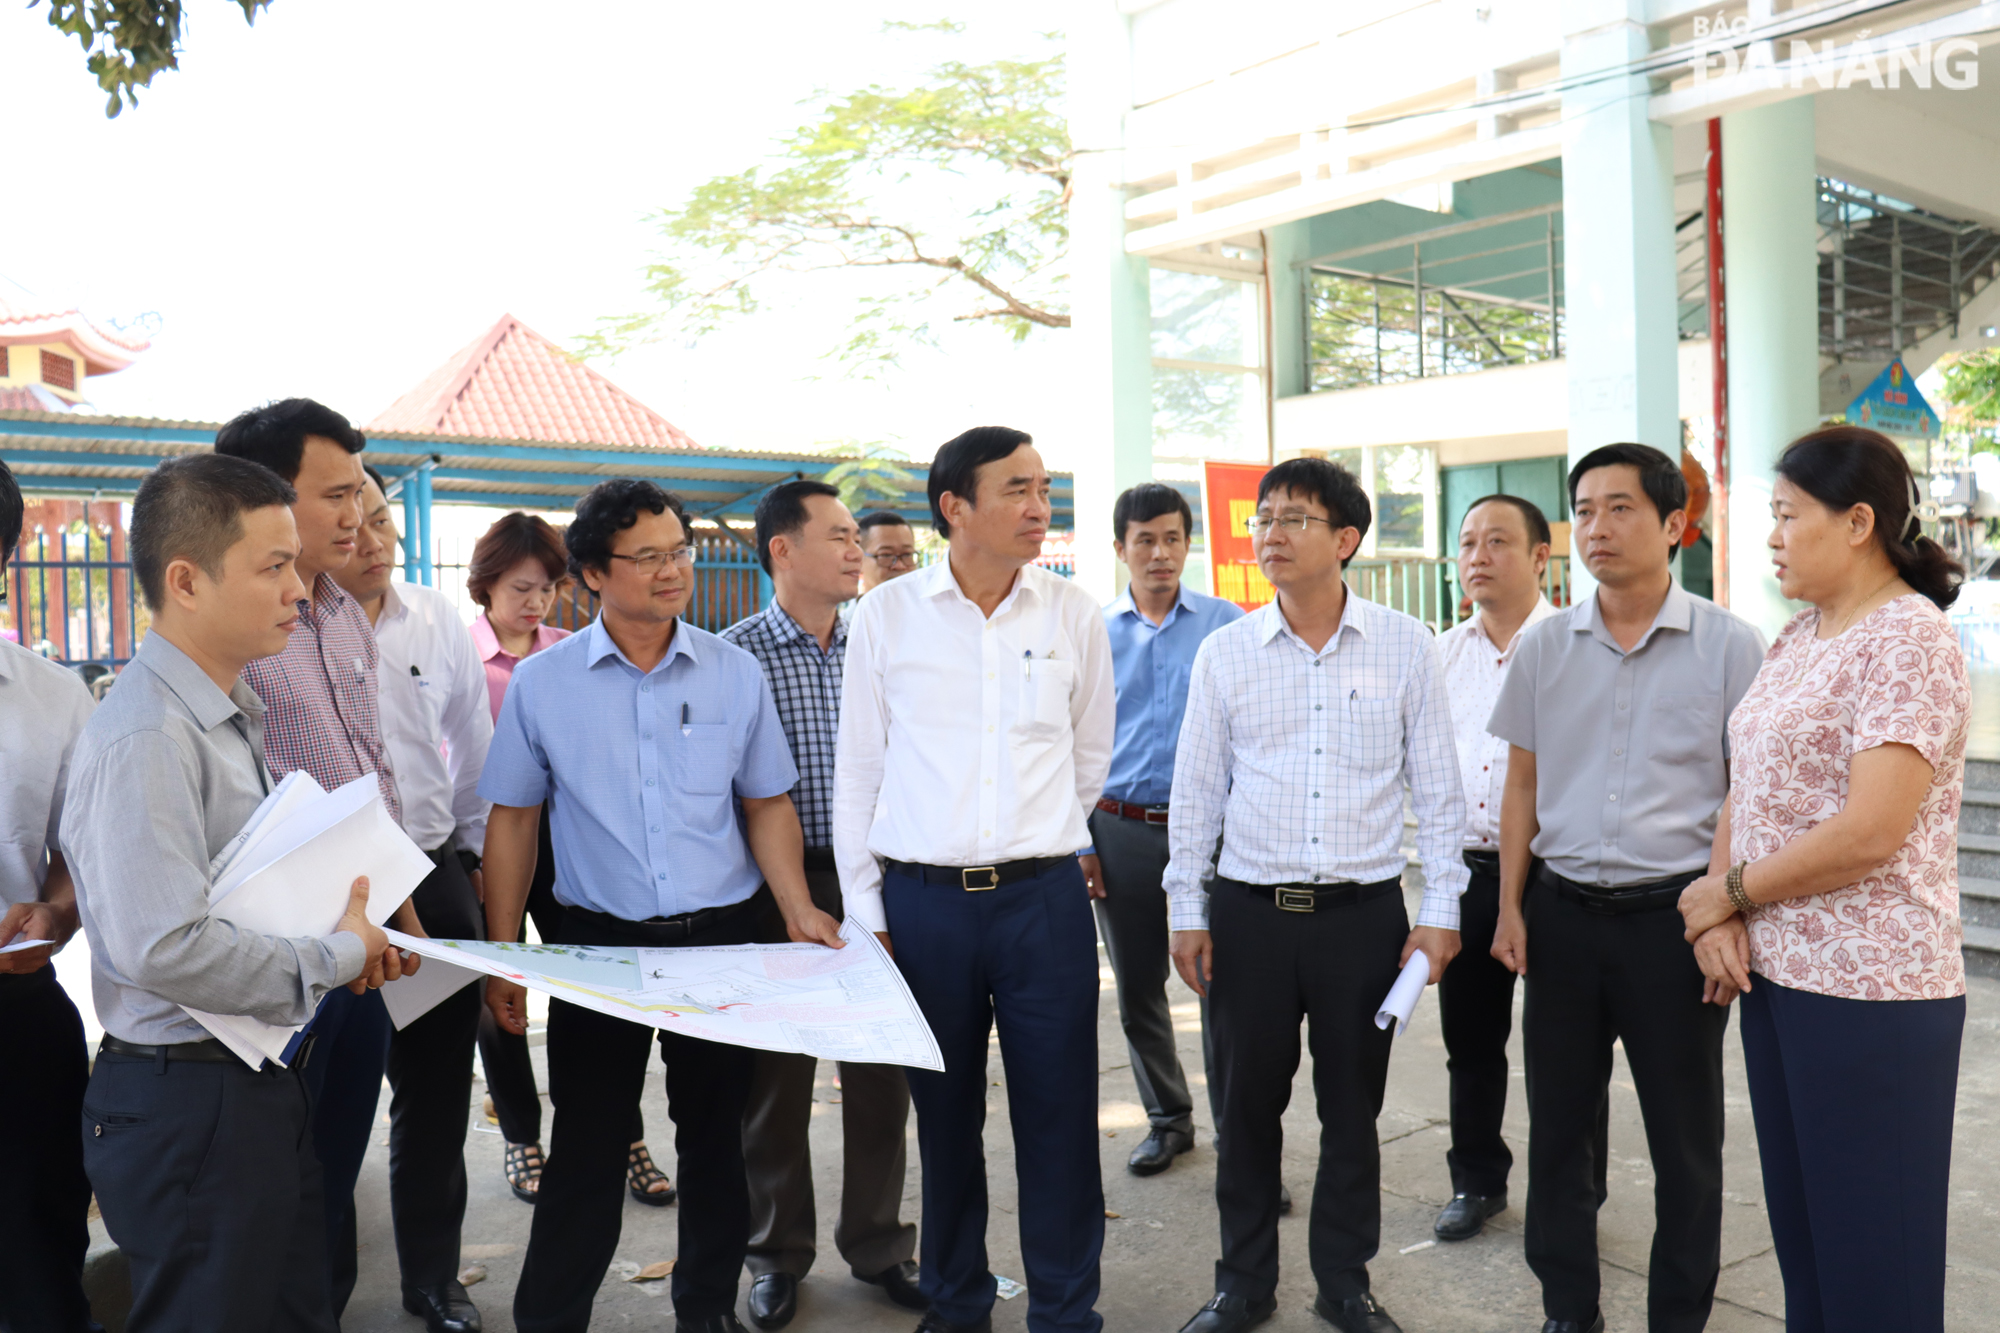 Chủ tịch UBND thành phố Lê Trung Chinh (thứ 6, từ phải sang) chia sẻ những khó khăn, bất cập trong dạy và học tại cơ sở 1 của Trường tiểu học Nguyễn Văn Trỗi do cơ sở vật chất được xây dựng hơn 20 năm. Ảnh: HOÀNG HIỆP